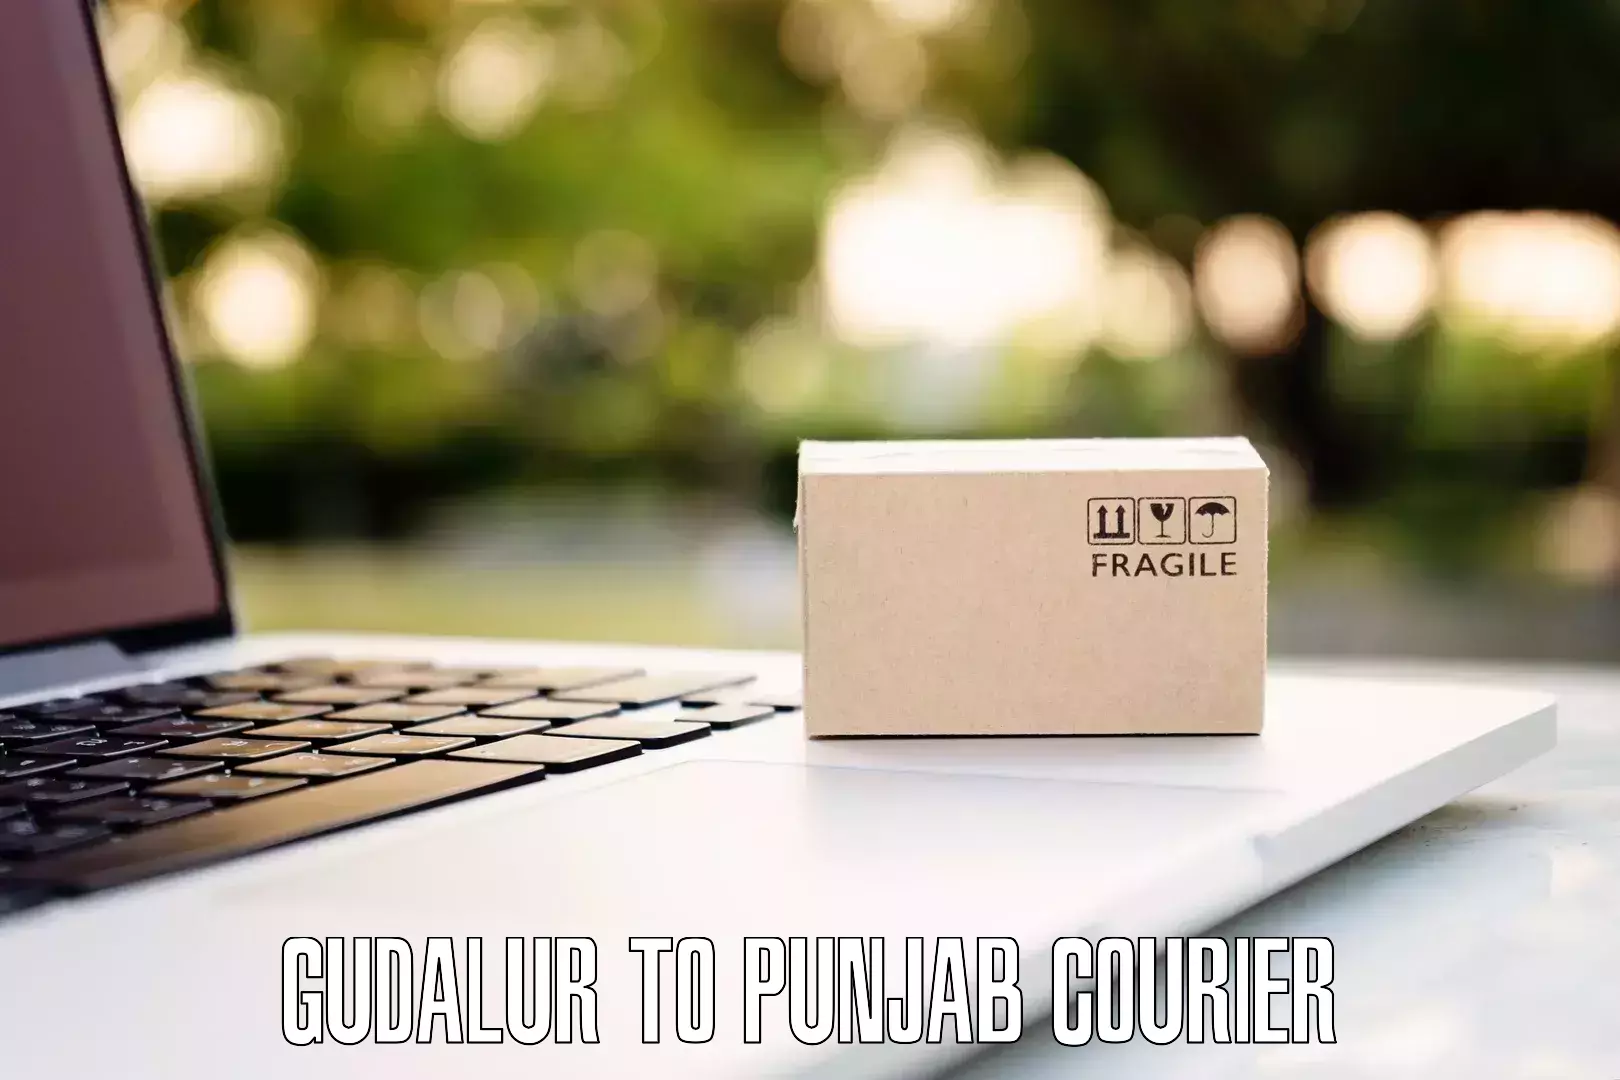 Door-to-door baggage service Gudalur to Punjab